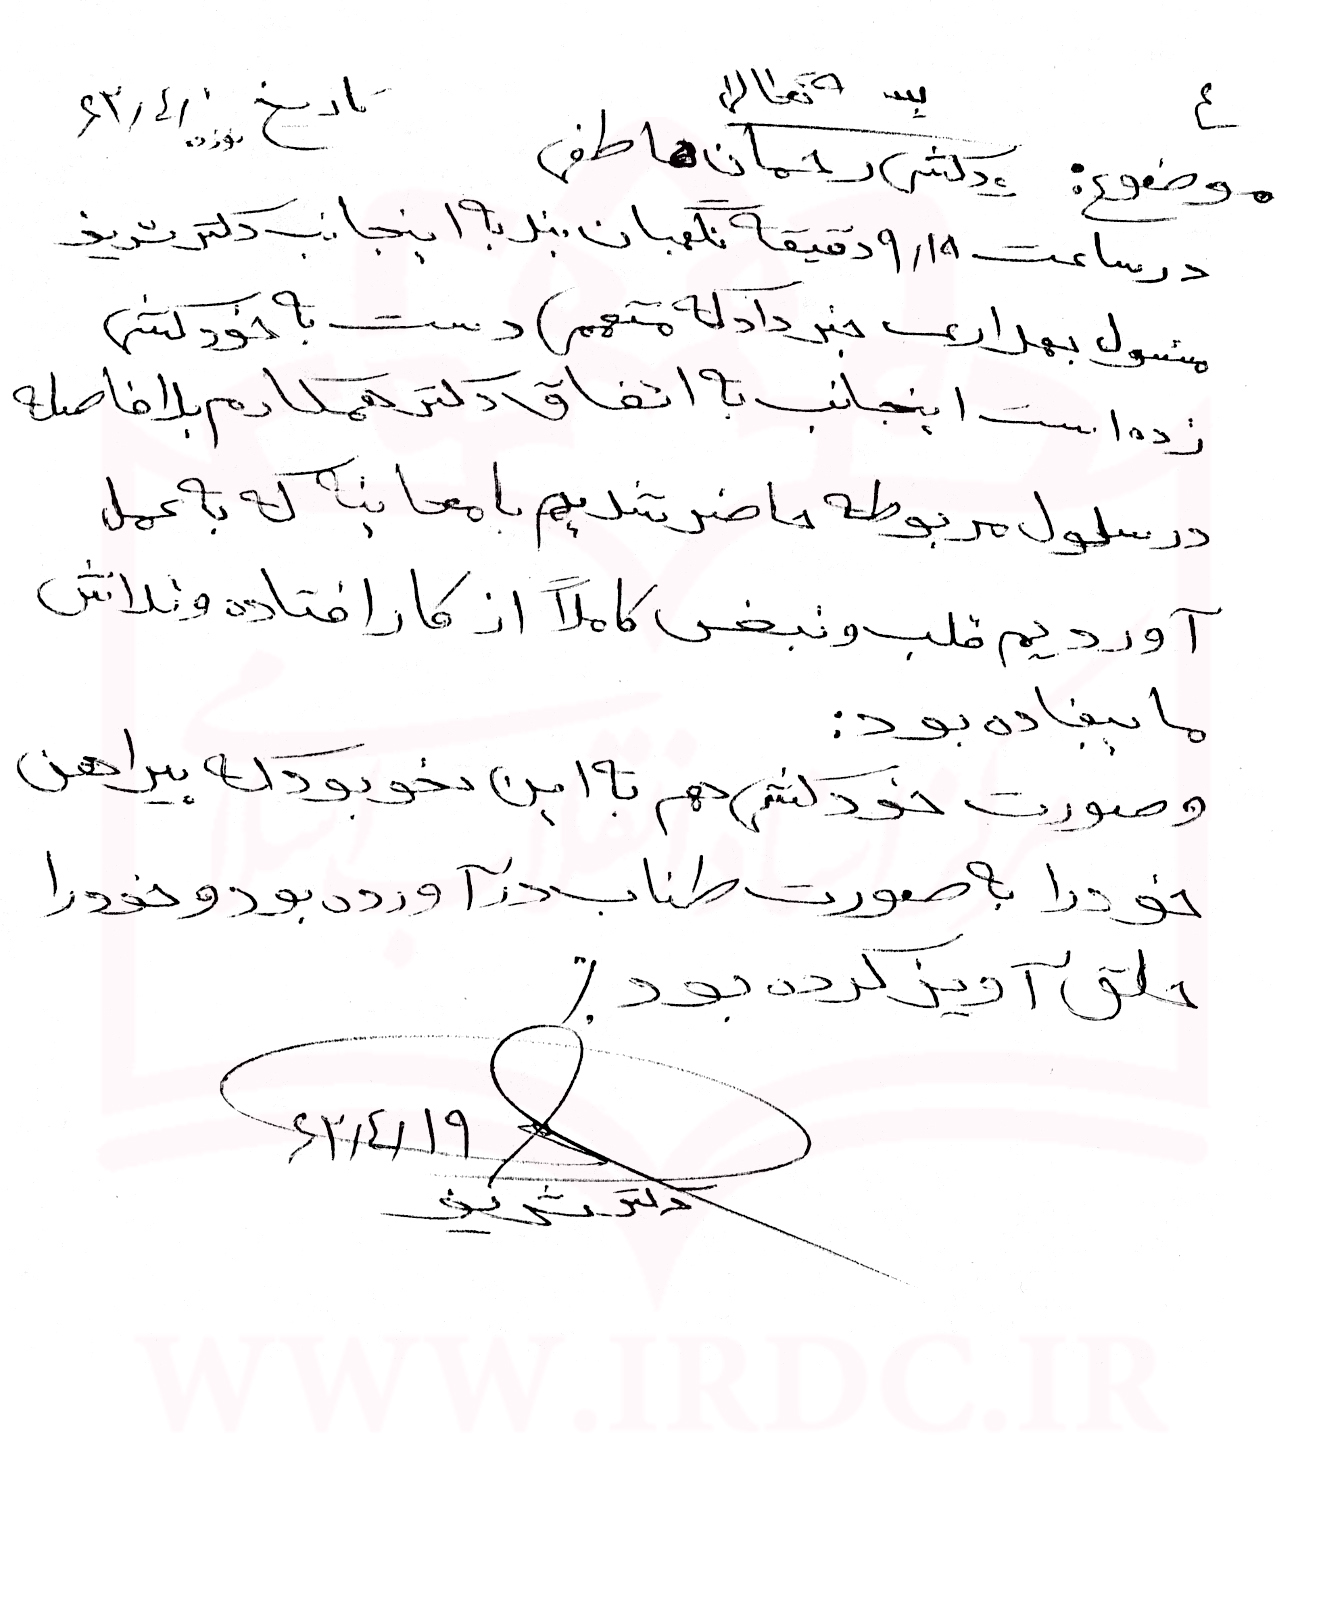 سندی از خودکشی رحمان هاتفی در زندان/ گزارش پزشکی قانونی درباره خودکشی یکی از اعضای حزب توده در سال 62